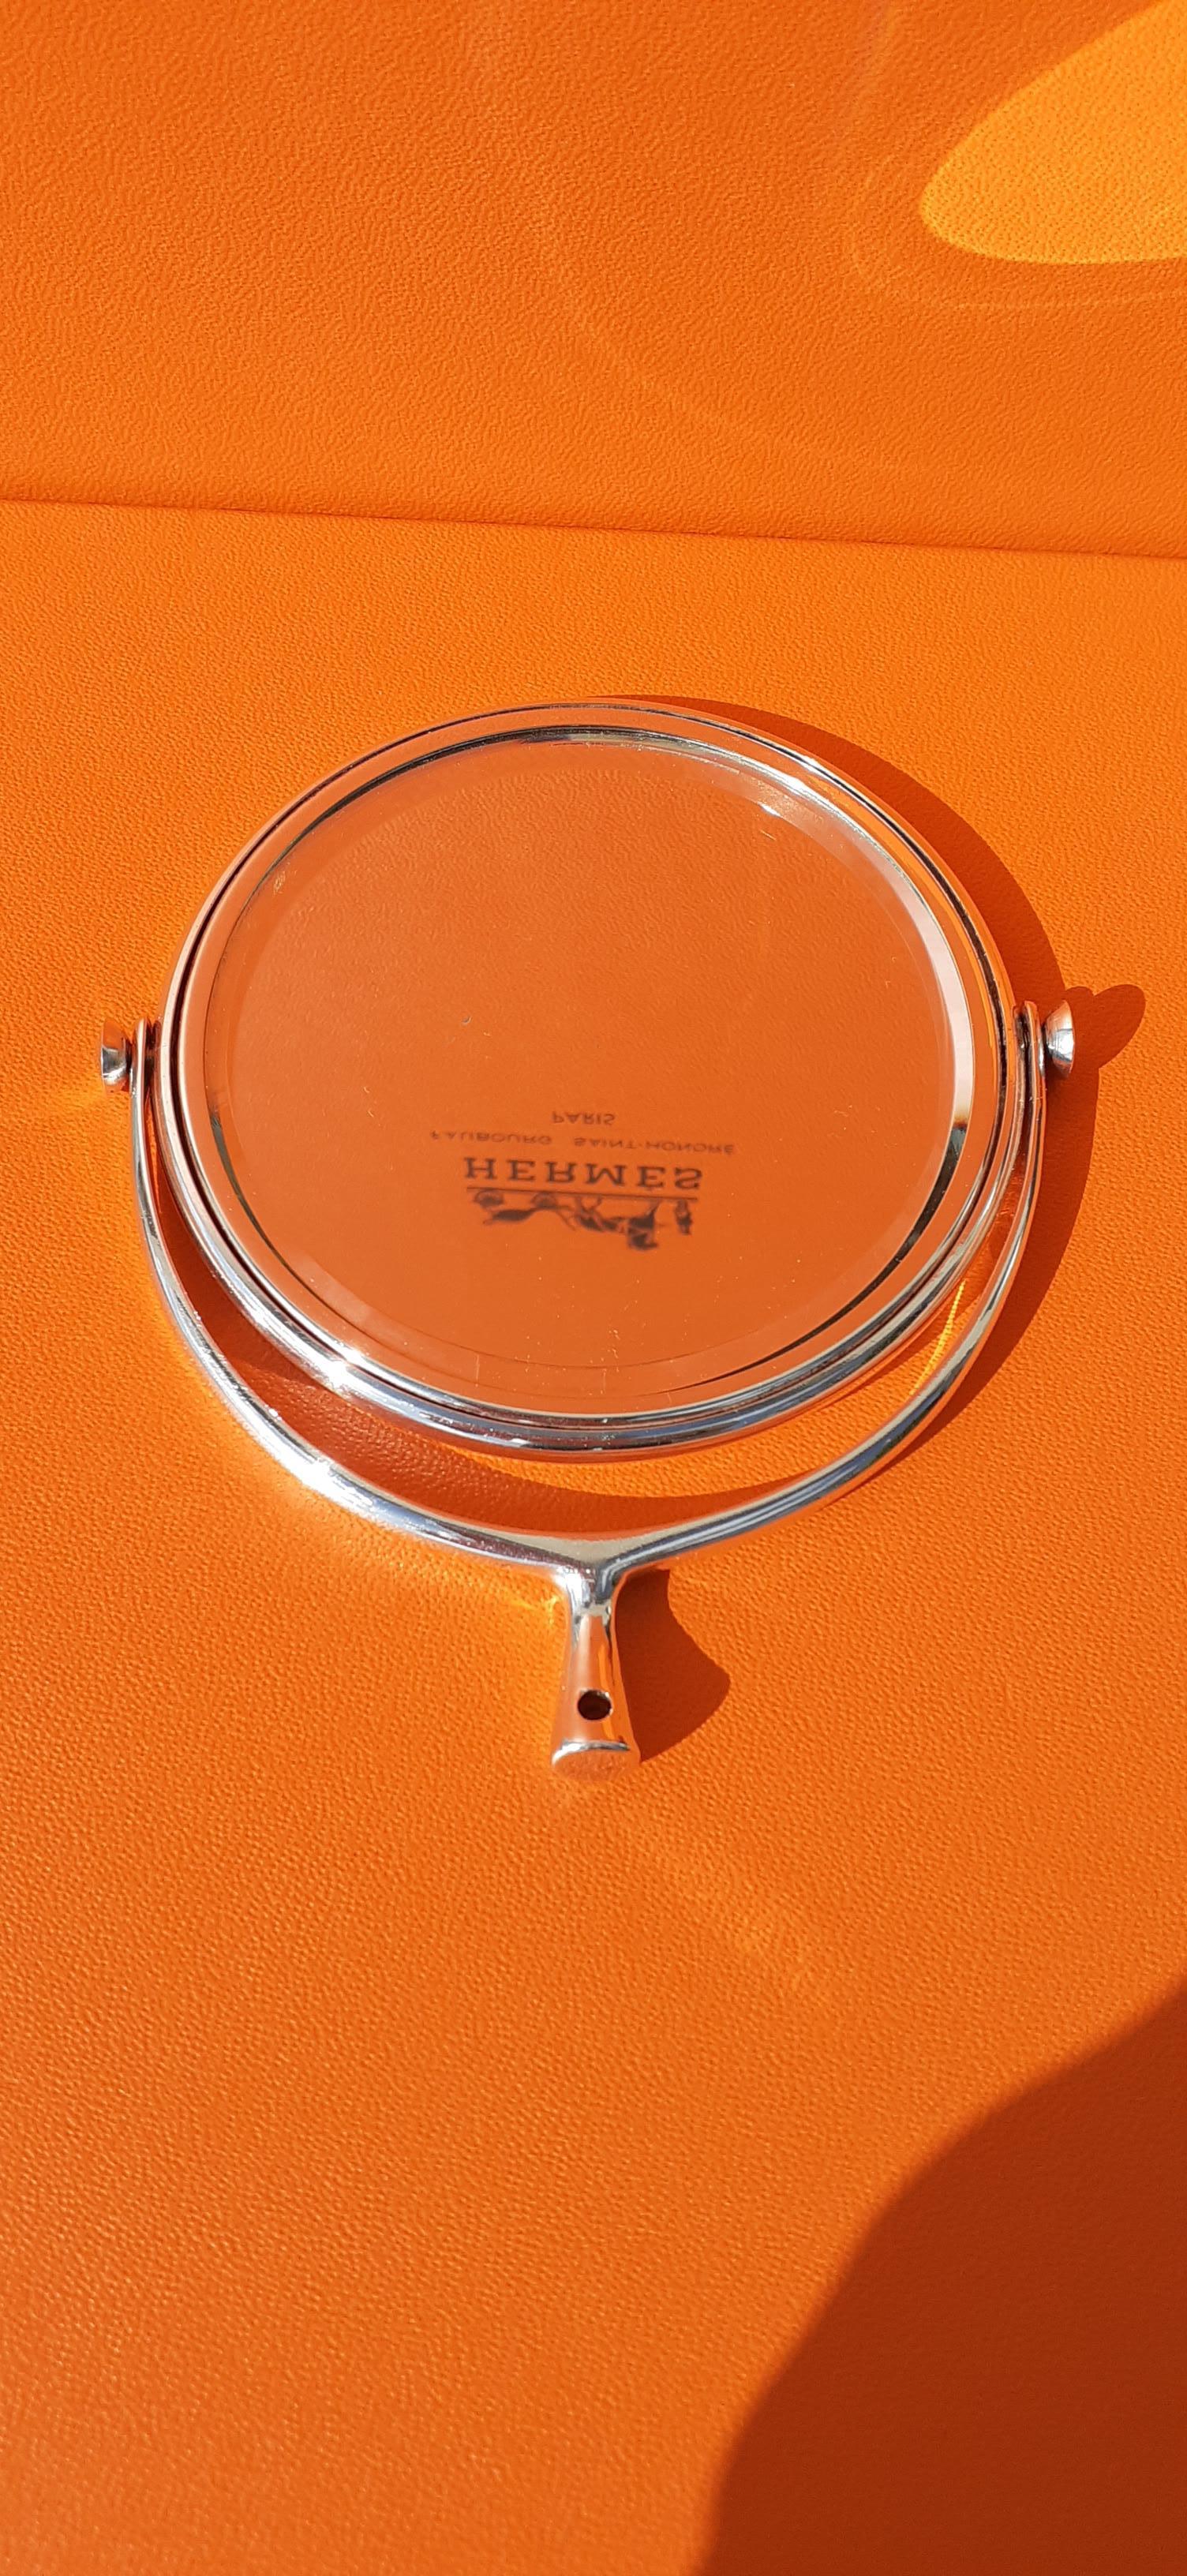 Niedlicher authentischer Hermès-Spiegel

Klein genug, um in eine Handtasche zu passen

In versilberter Meta, Vintage By

